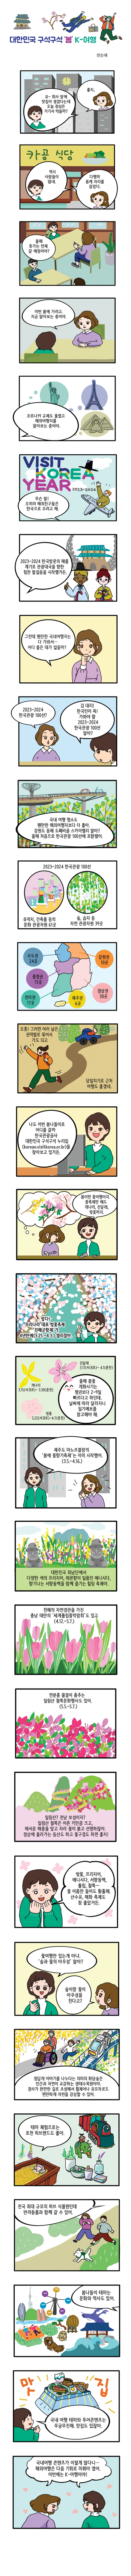 [카툰공감] 대한민국 구석구석 ‘봄’ K-여행